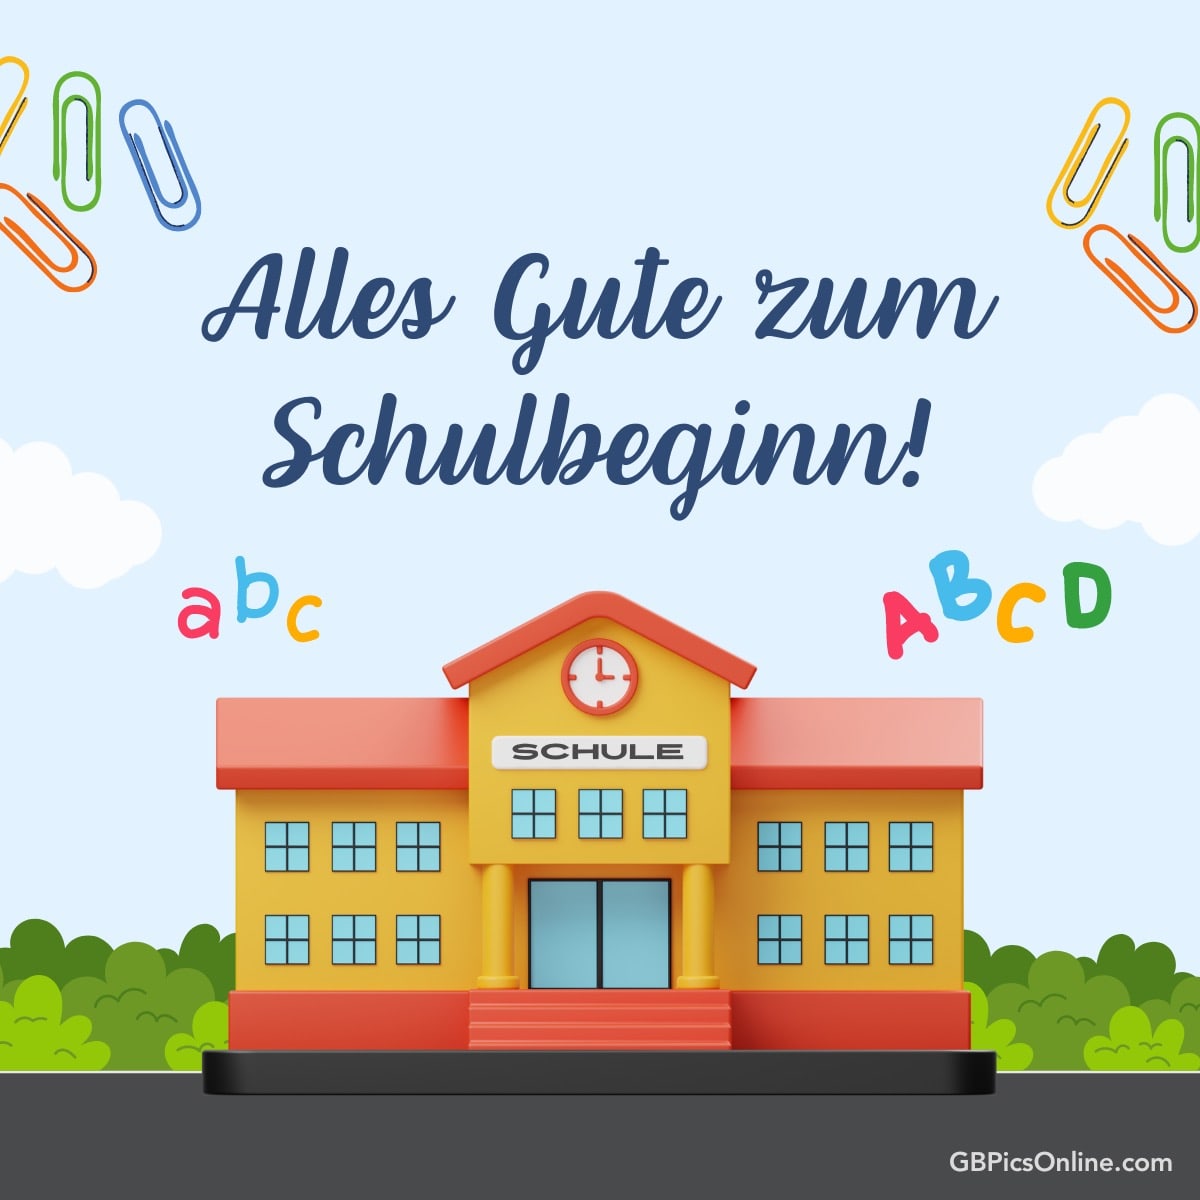 Eine bunte Illustration zur Feier des Schulanfangs mit einer Schule und Buchstaben